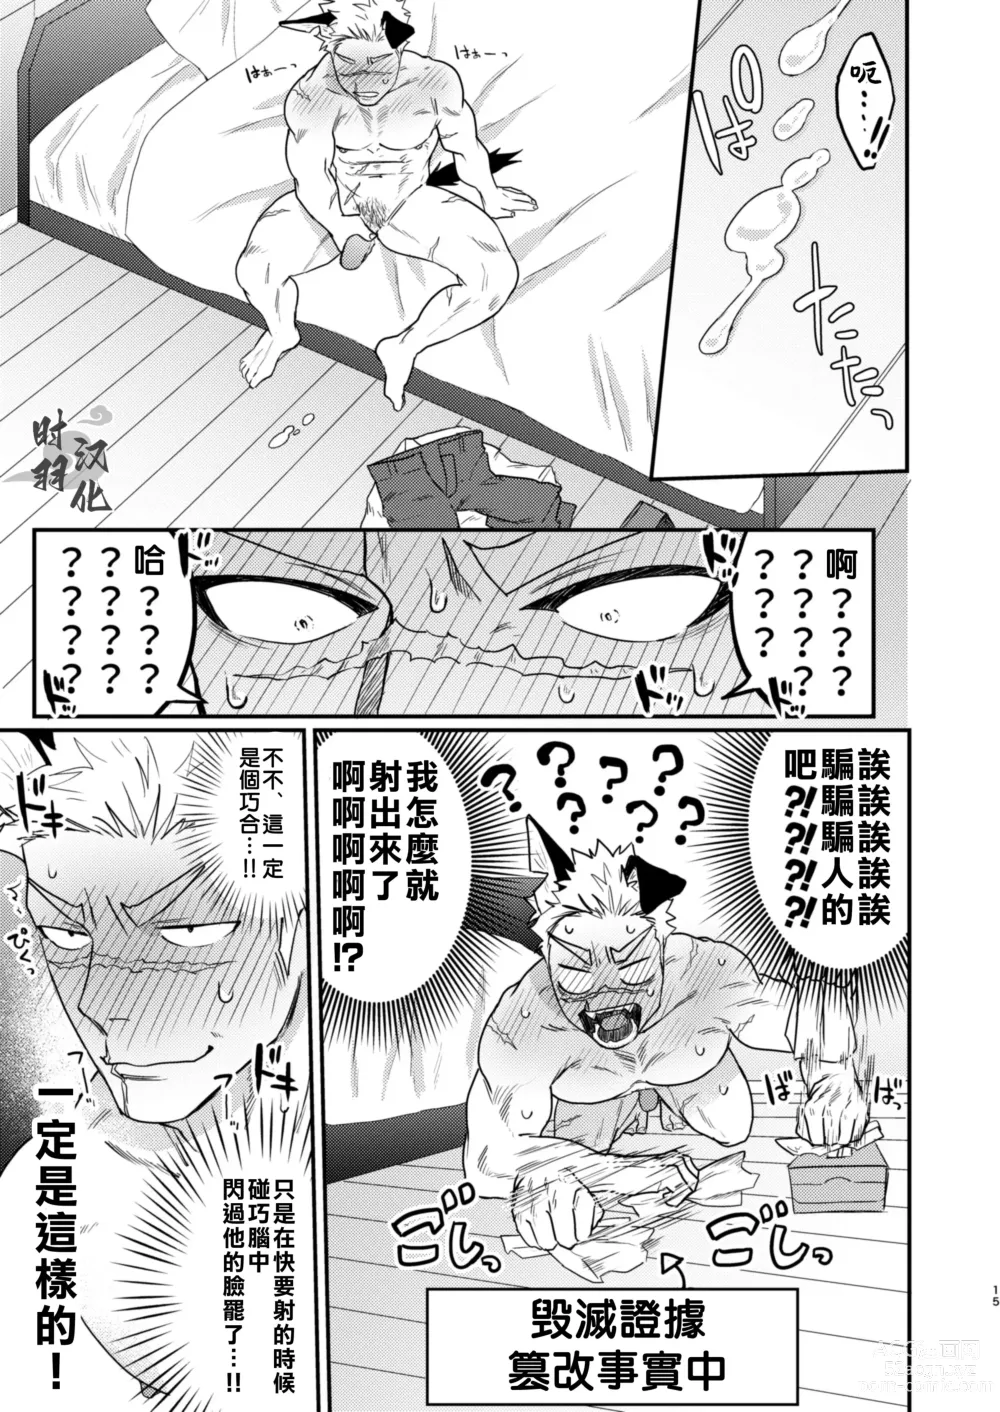 Page 12 of doujinshi 你這條進入發情期的忠犬就由我這主人來幫忙吧